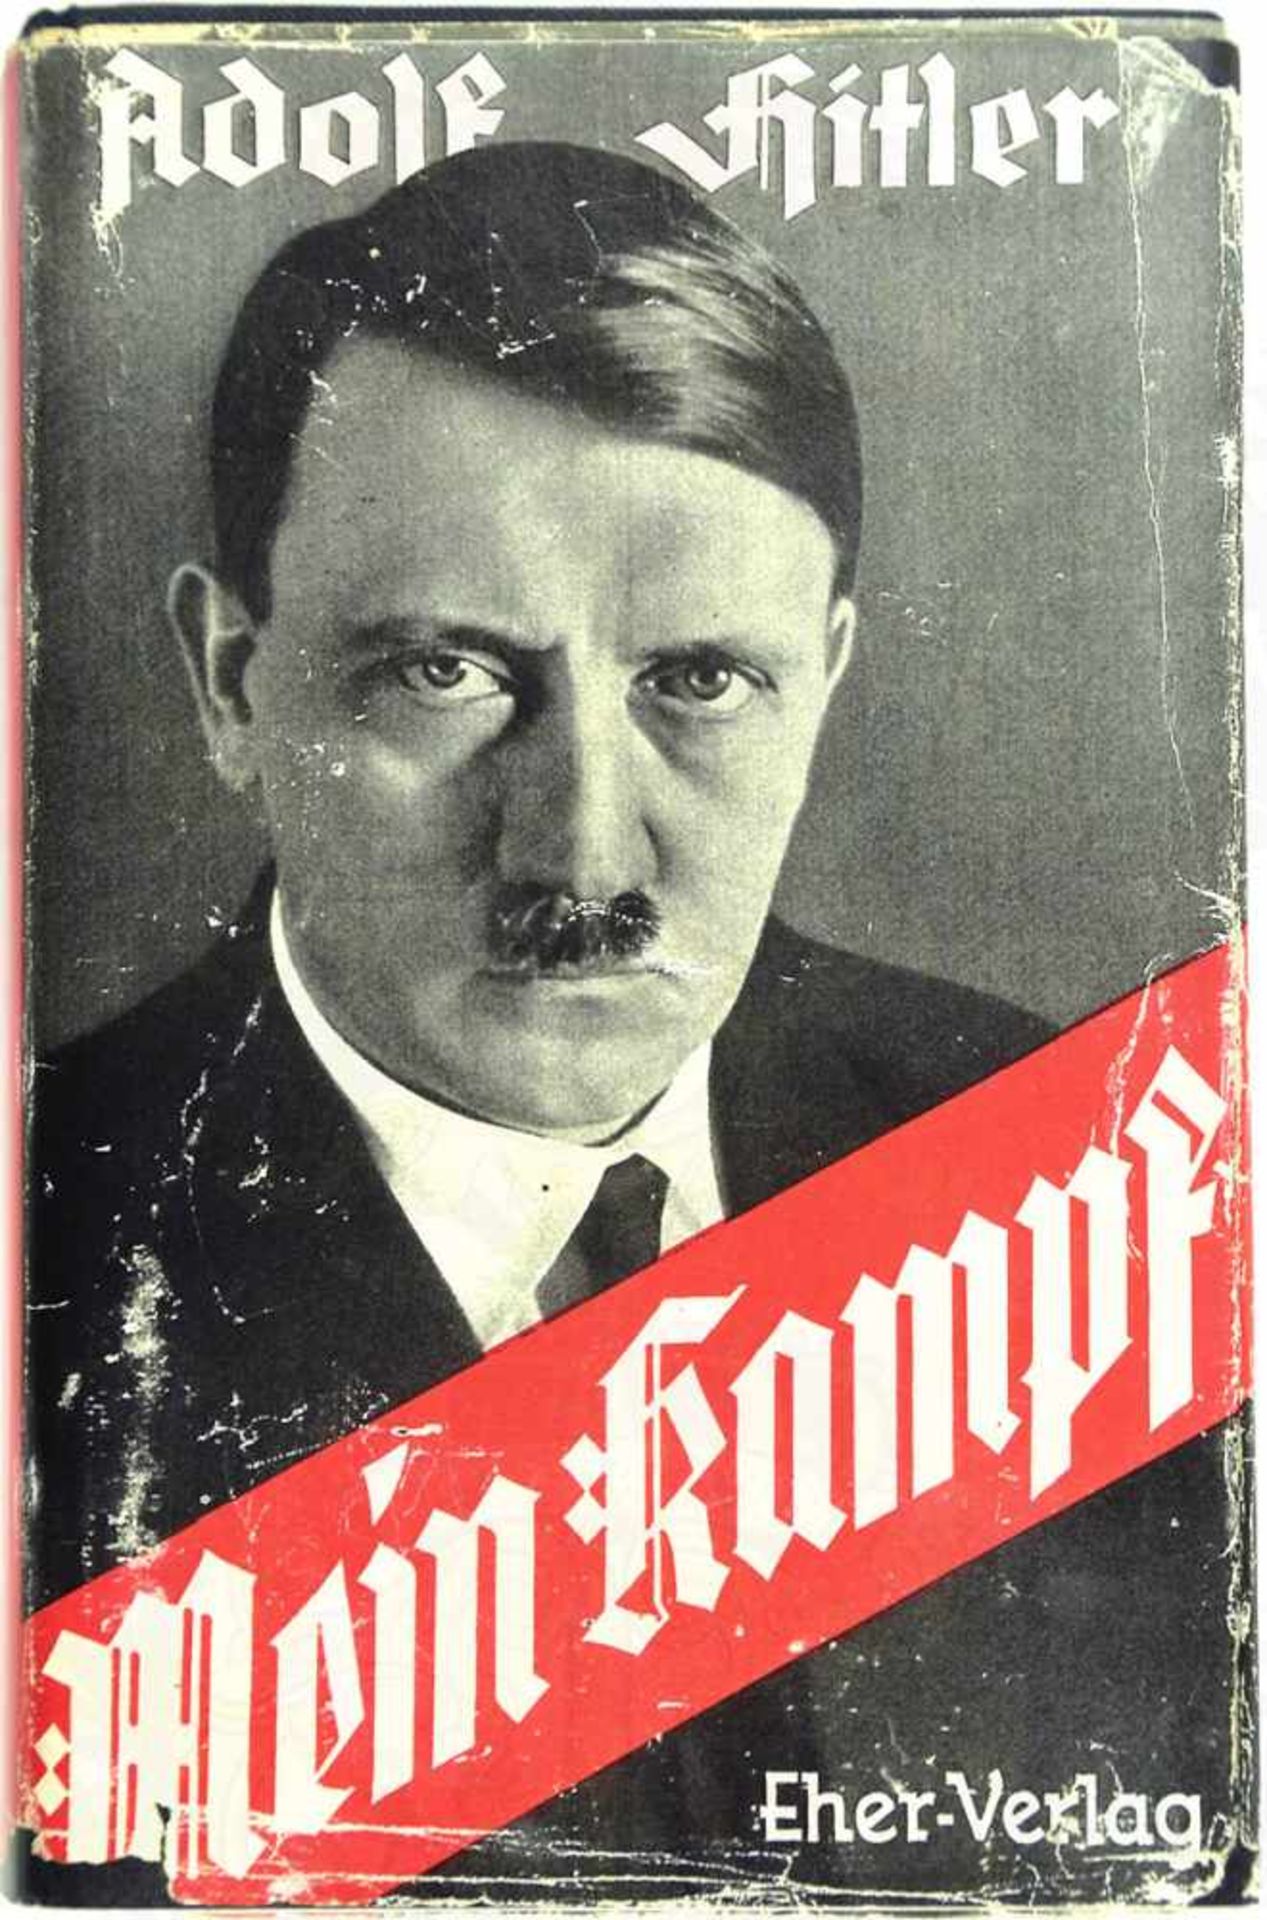 MEIN KAMPF, A. Hitler, Volksausgabe, Franz Eher Verlag, München 1942, 781 S., 1 Porträtbild,